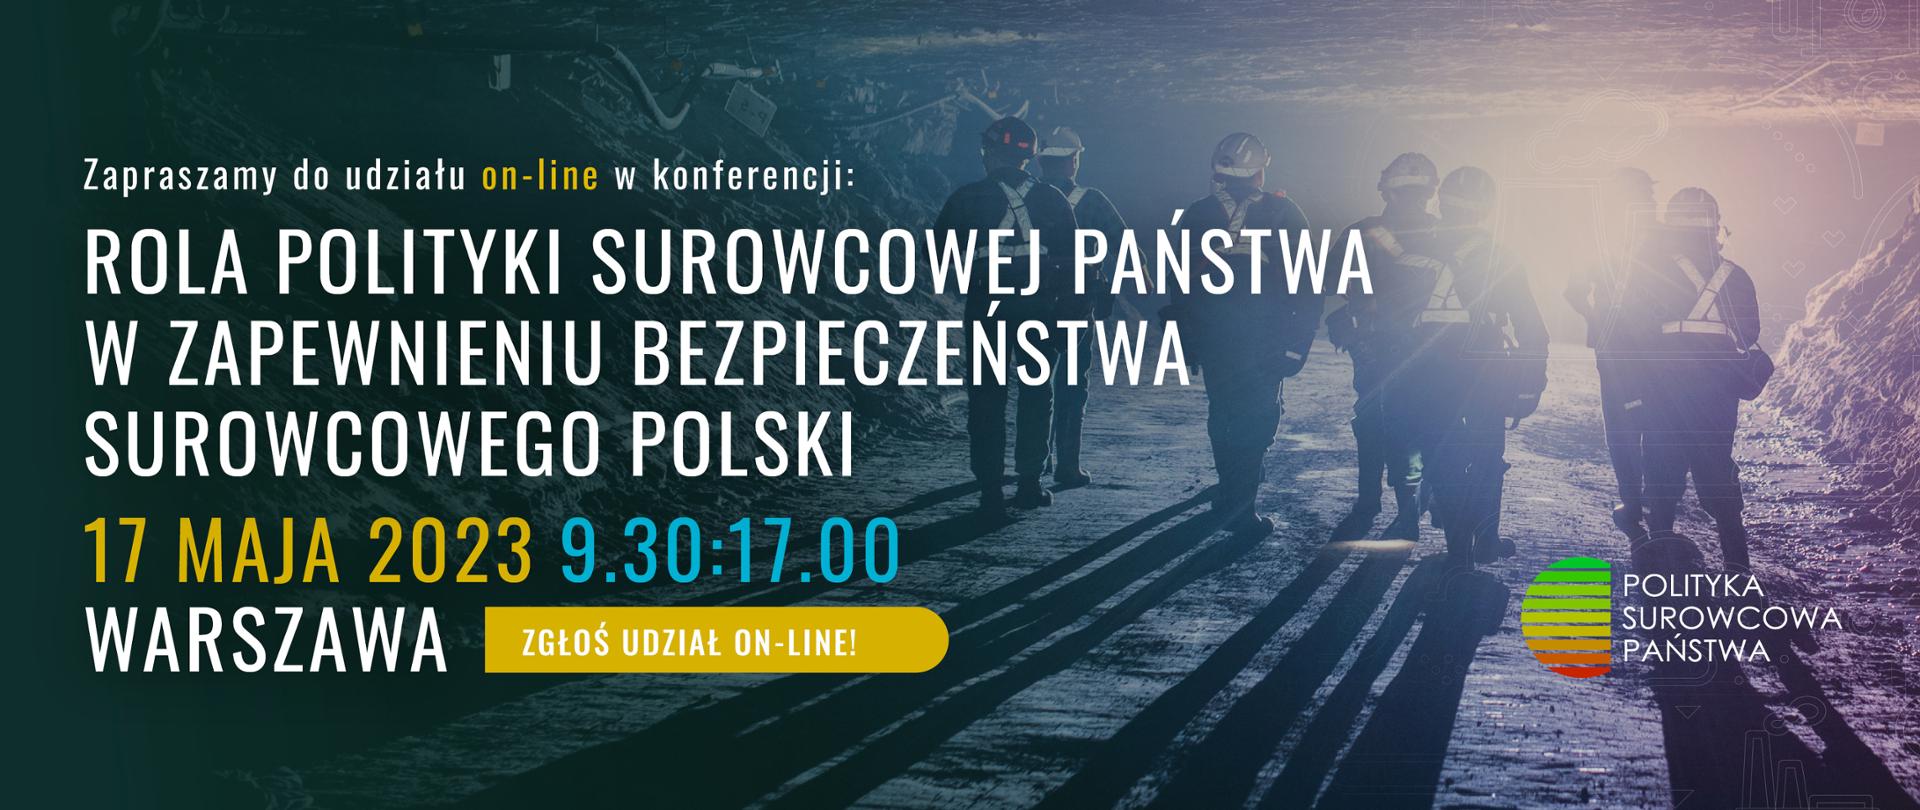 
Zapraszamy do udziału w konferencji "Rola Polityki Surowcowej Państwa w zapewnieniu bezpieczeństwa surowcowego Polski"